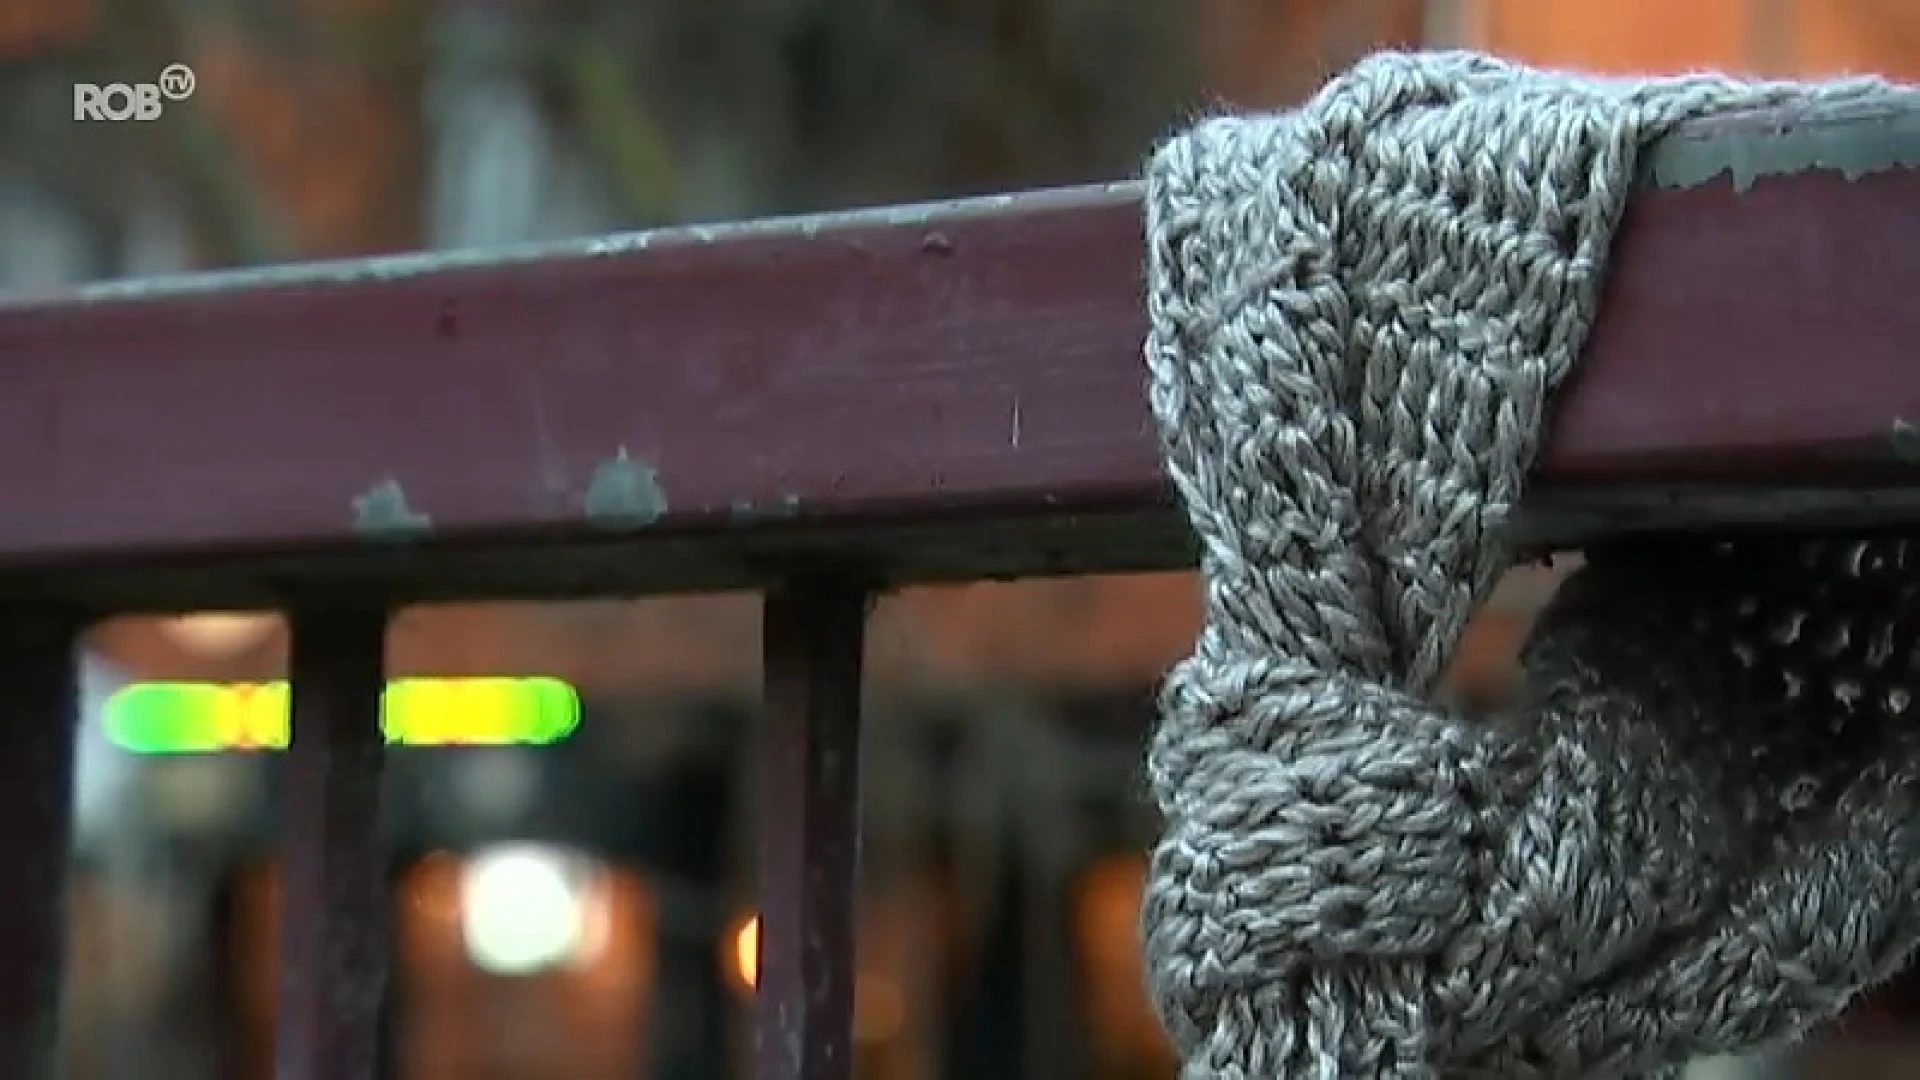 Hartverwarmend: weldoener breit gratis sjaals in Aarschot voor mensen die het koud hebben